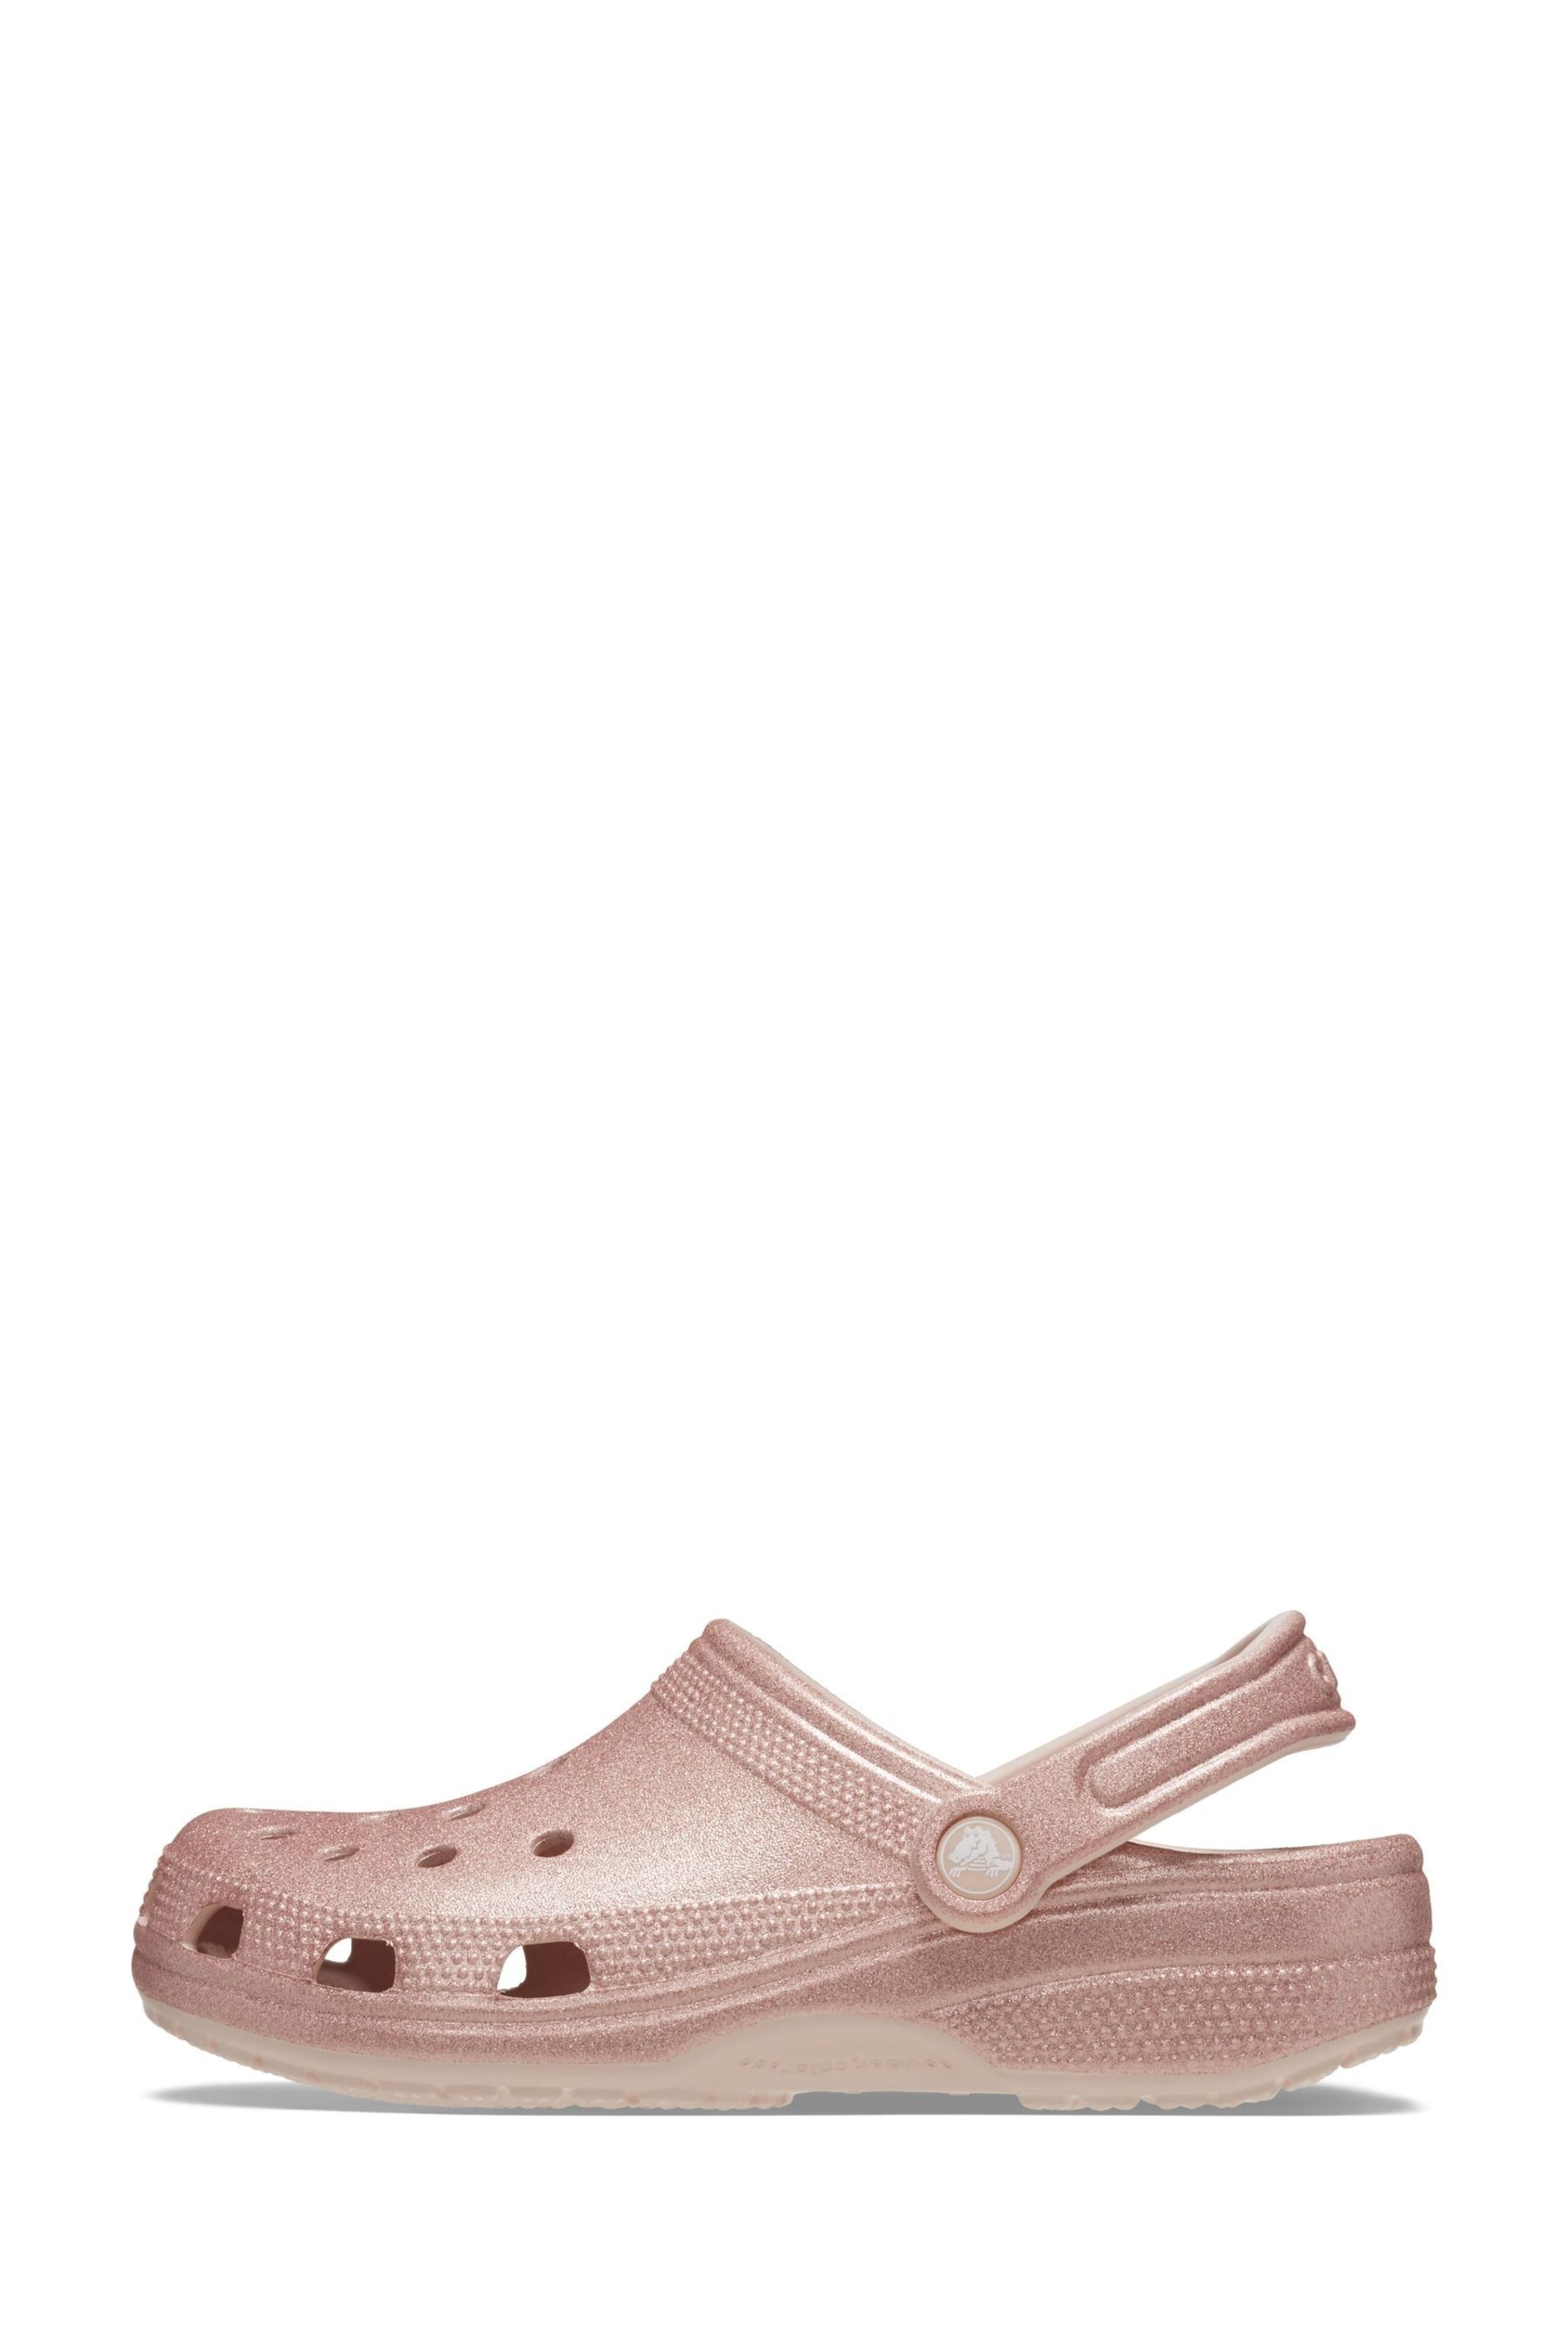 Crocs Classic Glitter Clog - Image 3 of 8